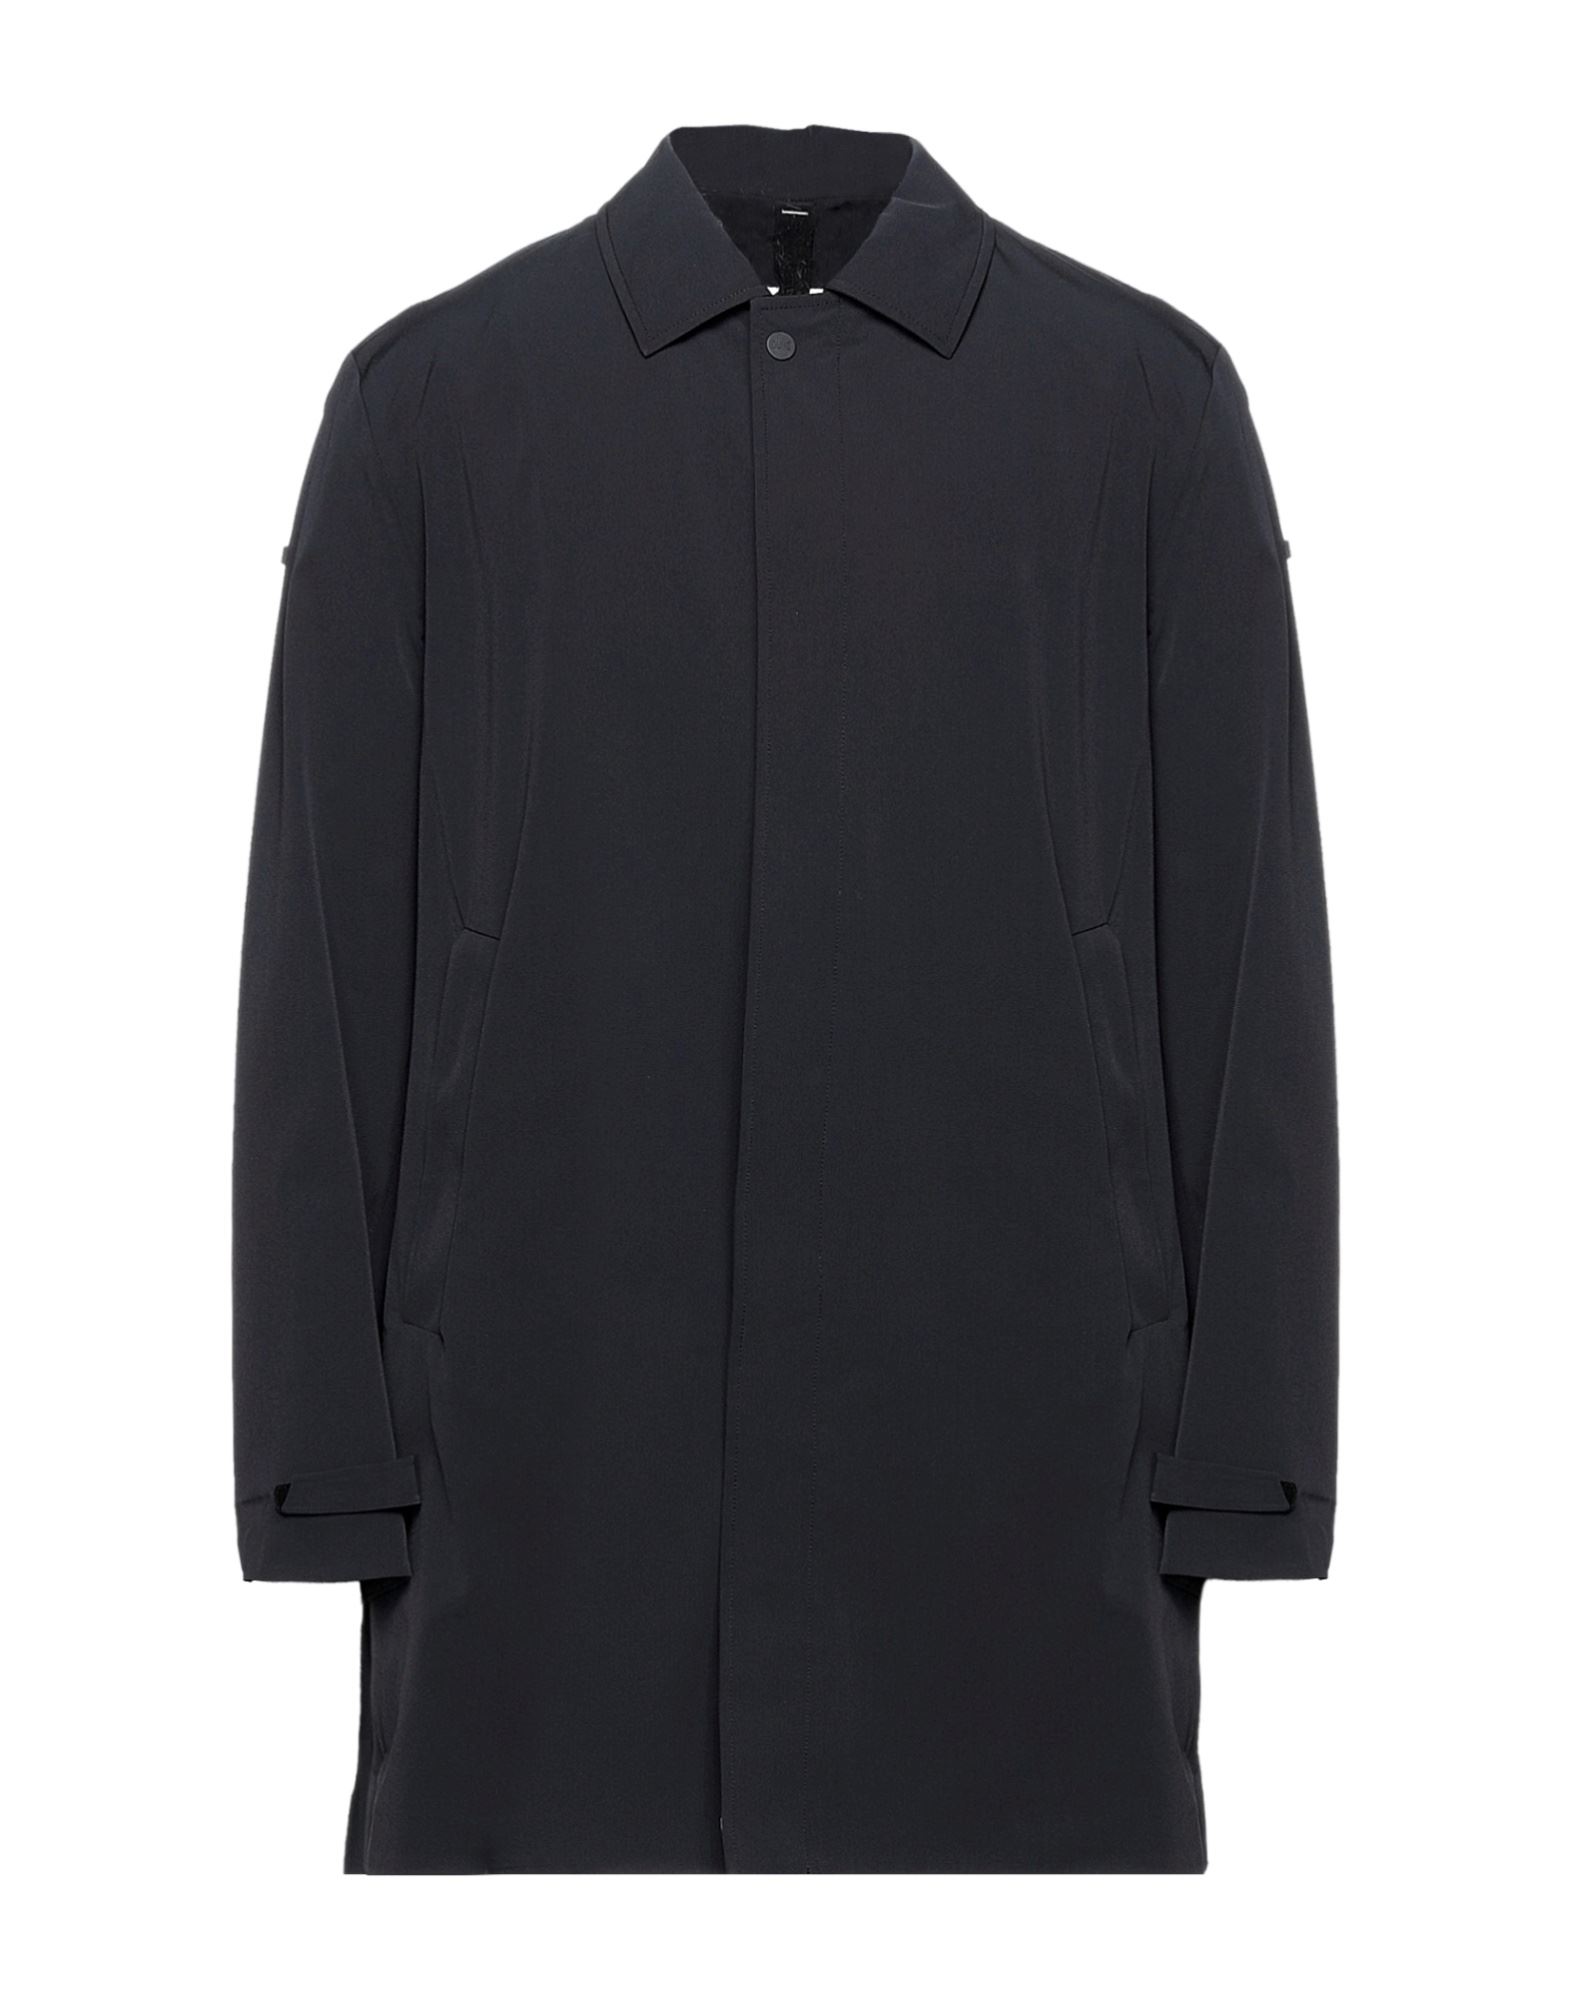 DUNO Overcoats | Smart Closet